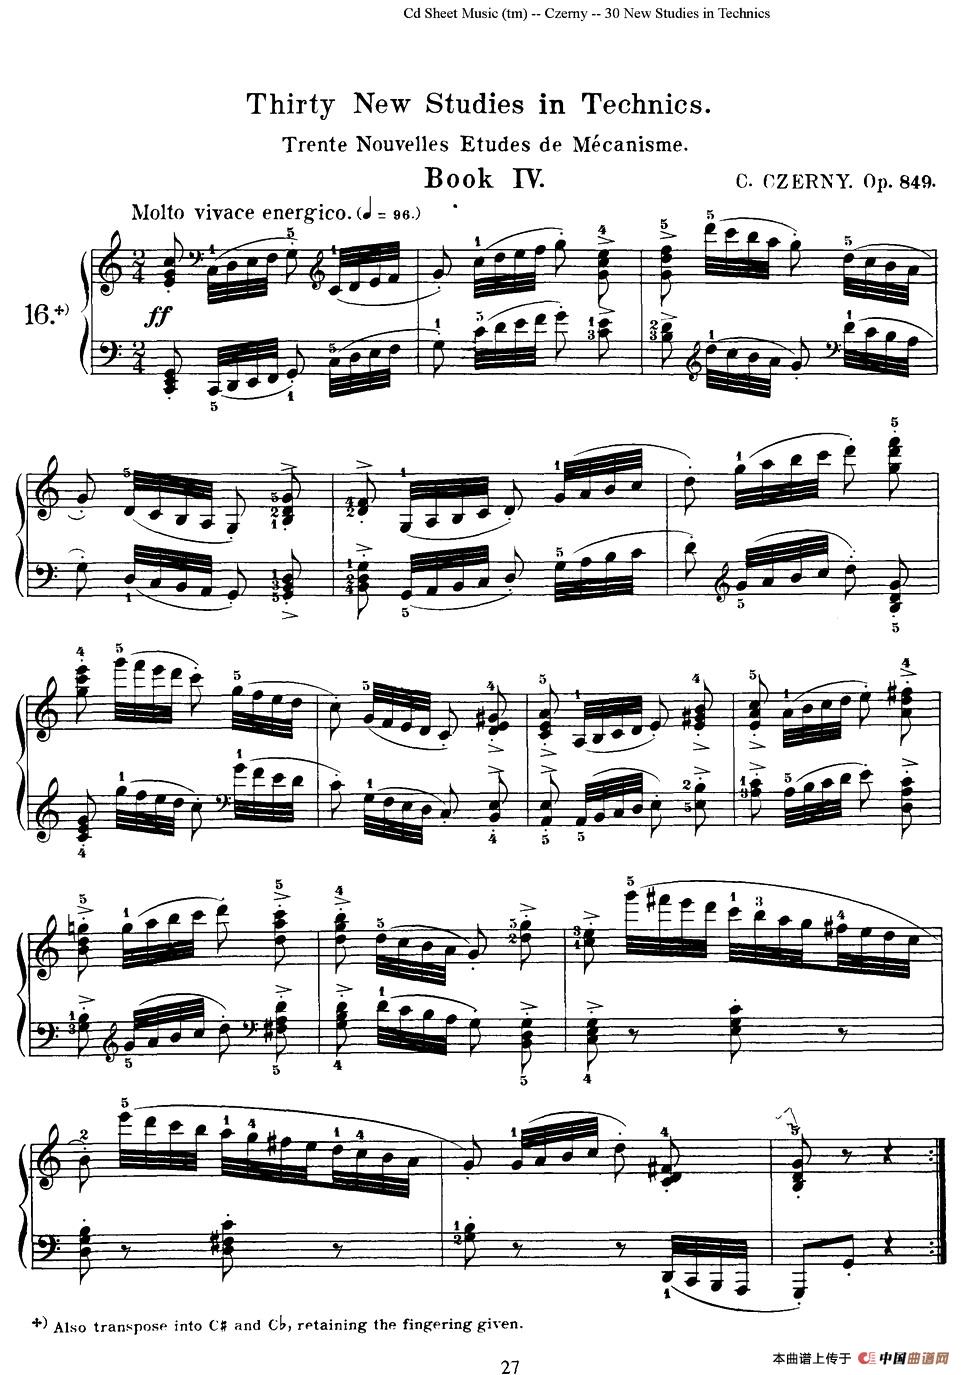 Czerny - 30 New Studies - 16（车尔尼Op849 - 30首练习曲）钢琴谱